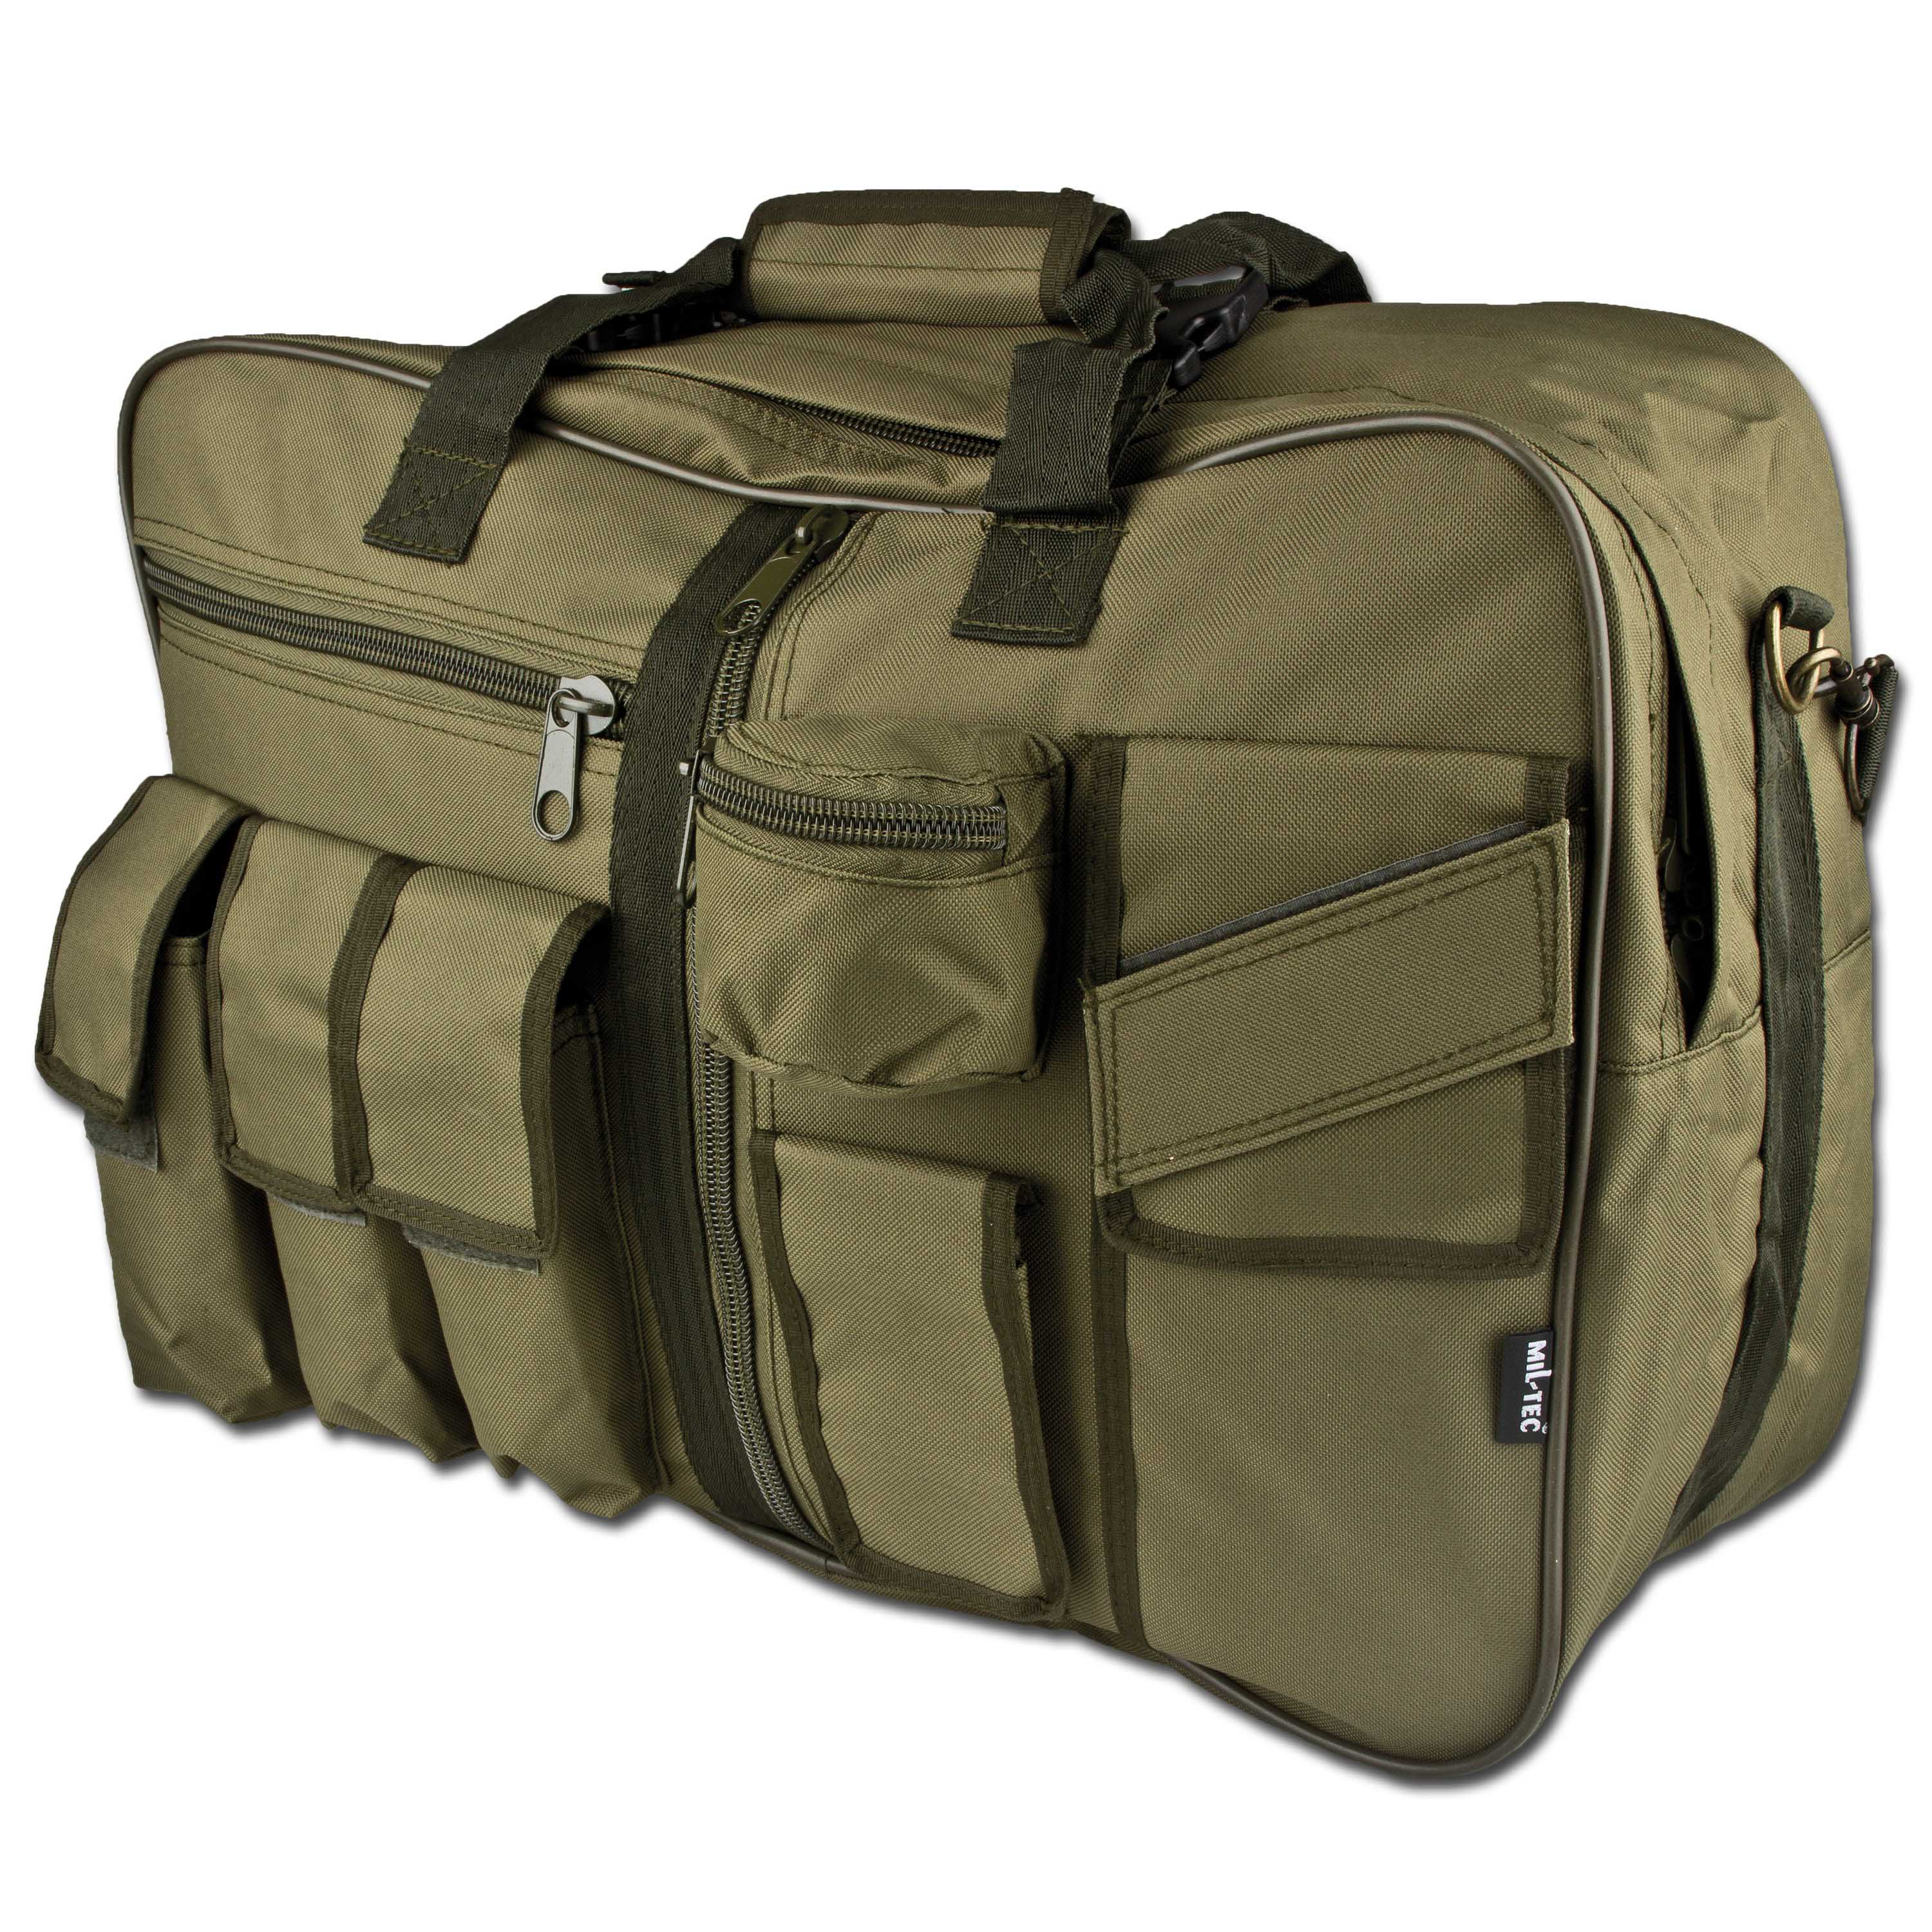 Tragetasche Mil-Tec Cargo Bag Seesack Armee Reisetasche Militär oliv